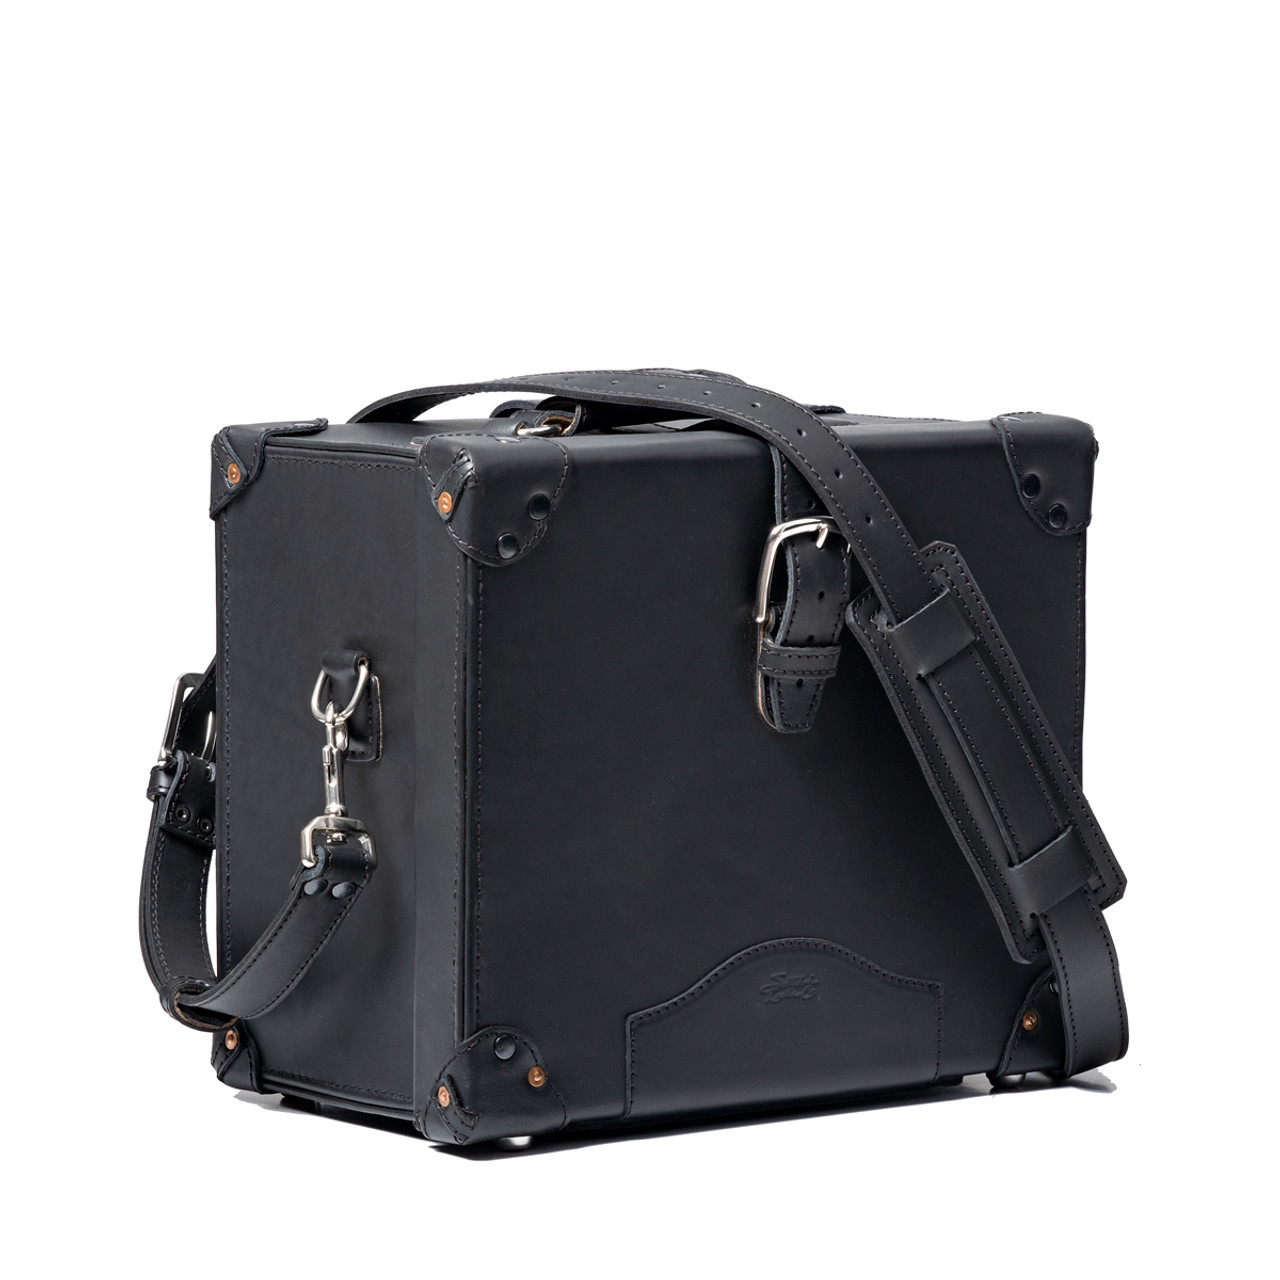 Vintage Black Hard case, camera bag, leather case for cameras with strap